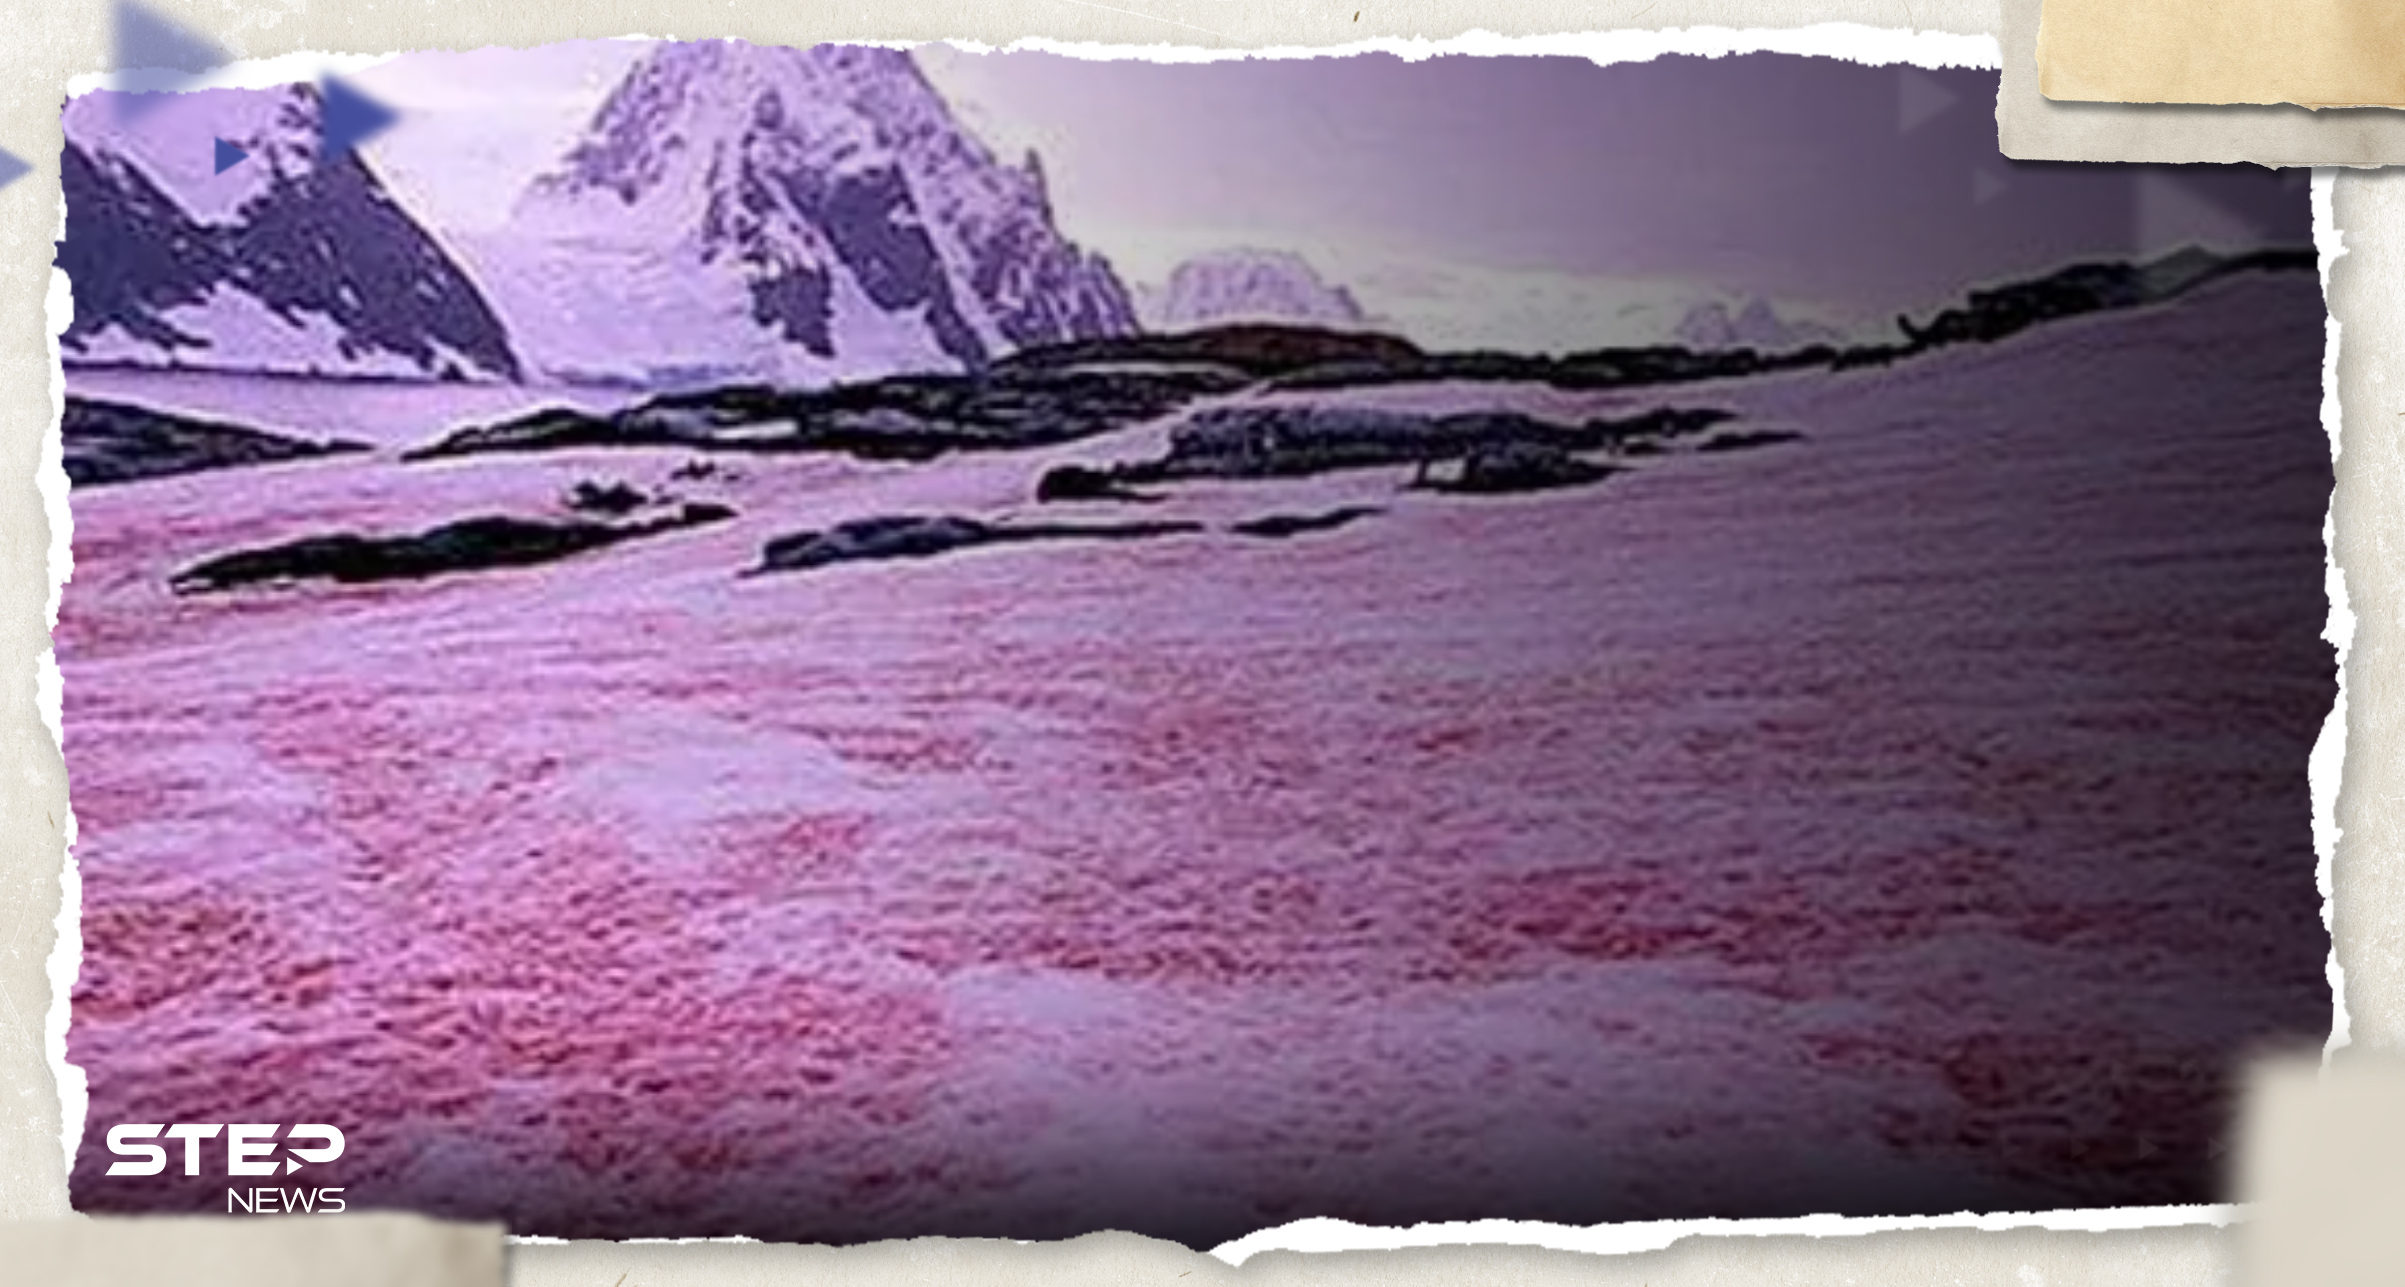 شاهد|| "الثلج الوردي".. سكان ولاية أمريكية يشهدون ظاهرة غريبة وعلماء يفسرونها